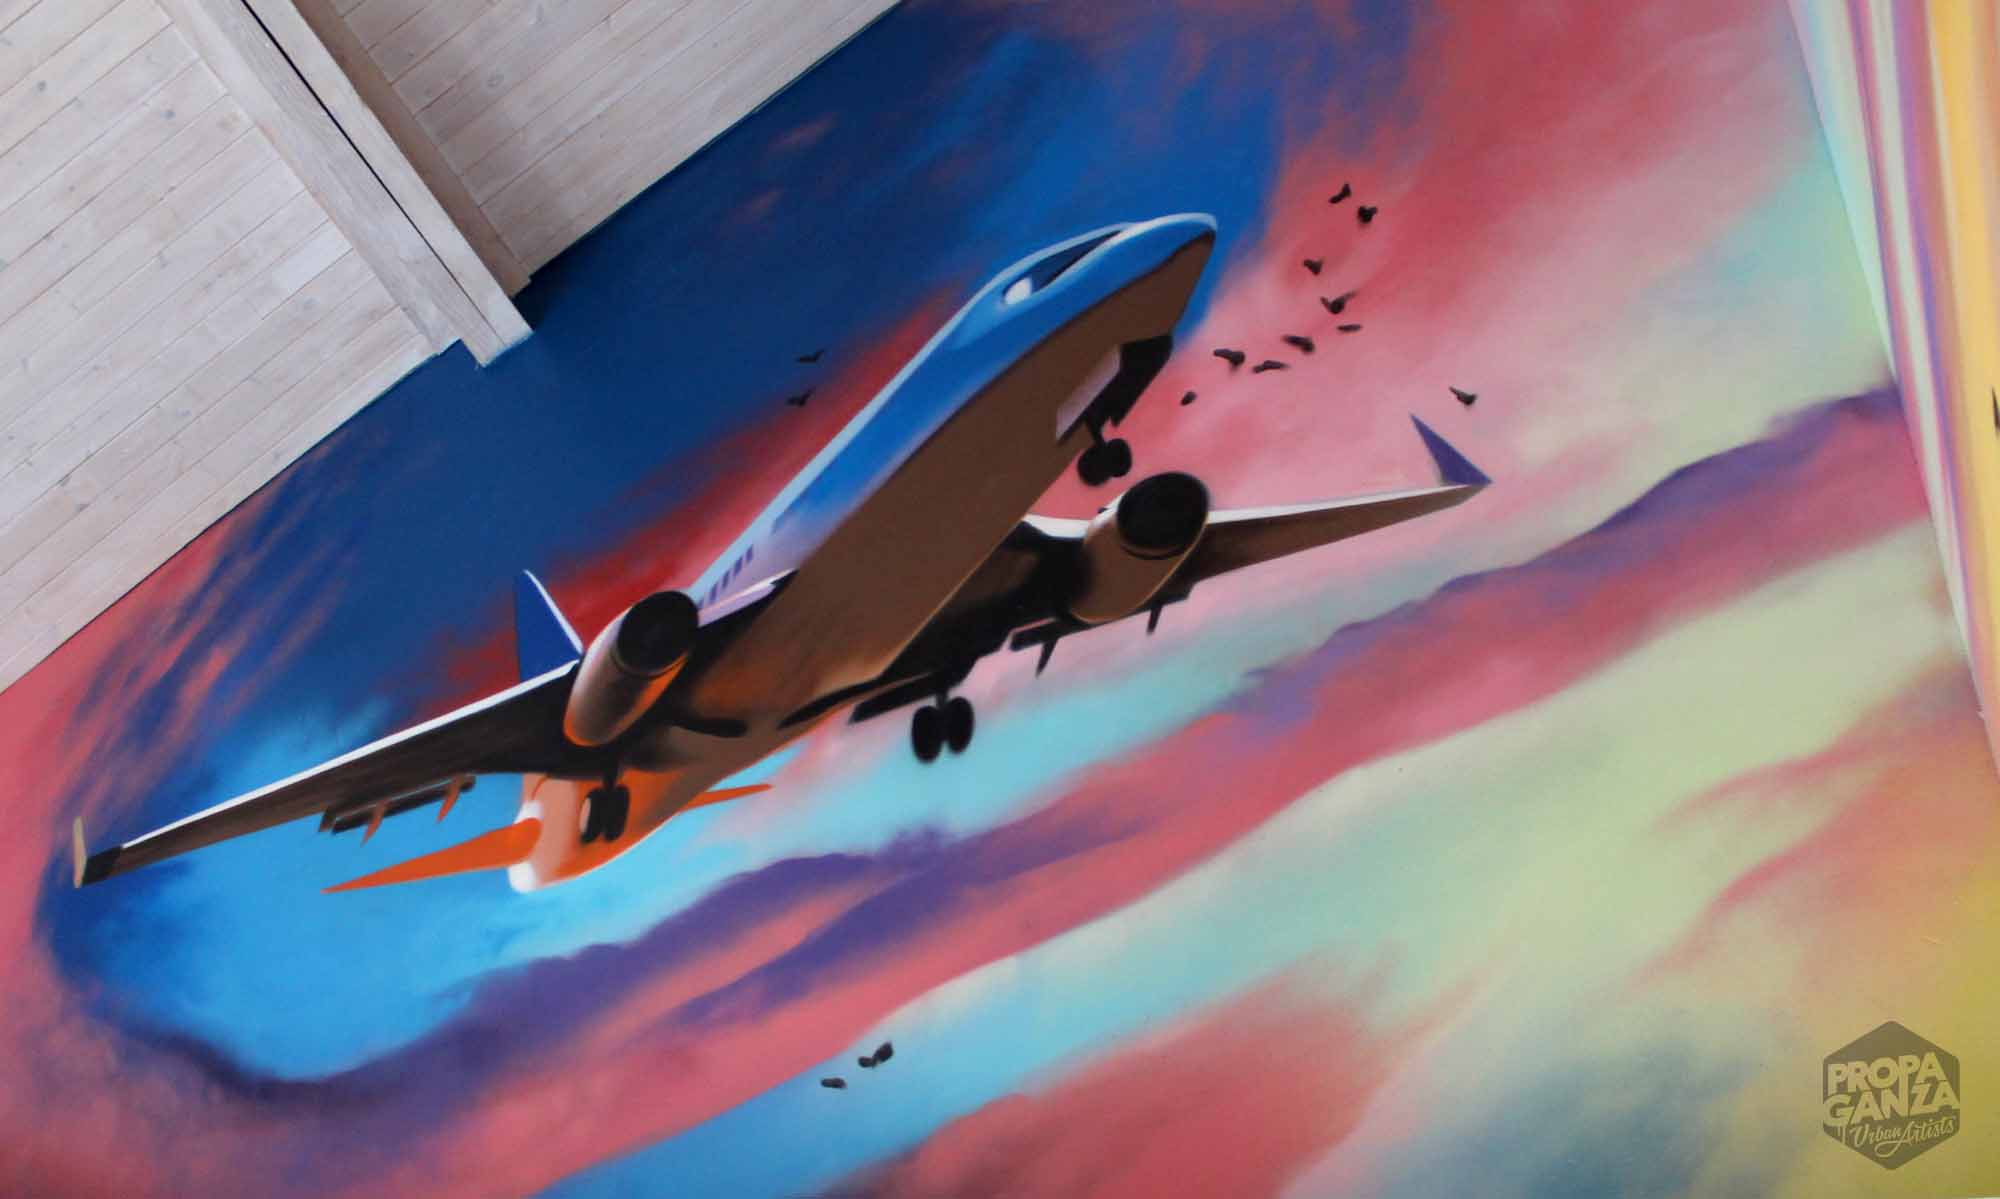 https://propaganza.be/nl/wp-content/uploads/sites/3/2019/04/propaganza-urban-artist-belgium-belgique-graffiti-graff-street-art-spray-paint-belgique-bart-smeets-smates-cuba-plane-clouds-1.jpg